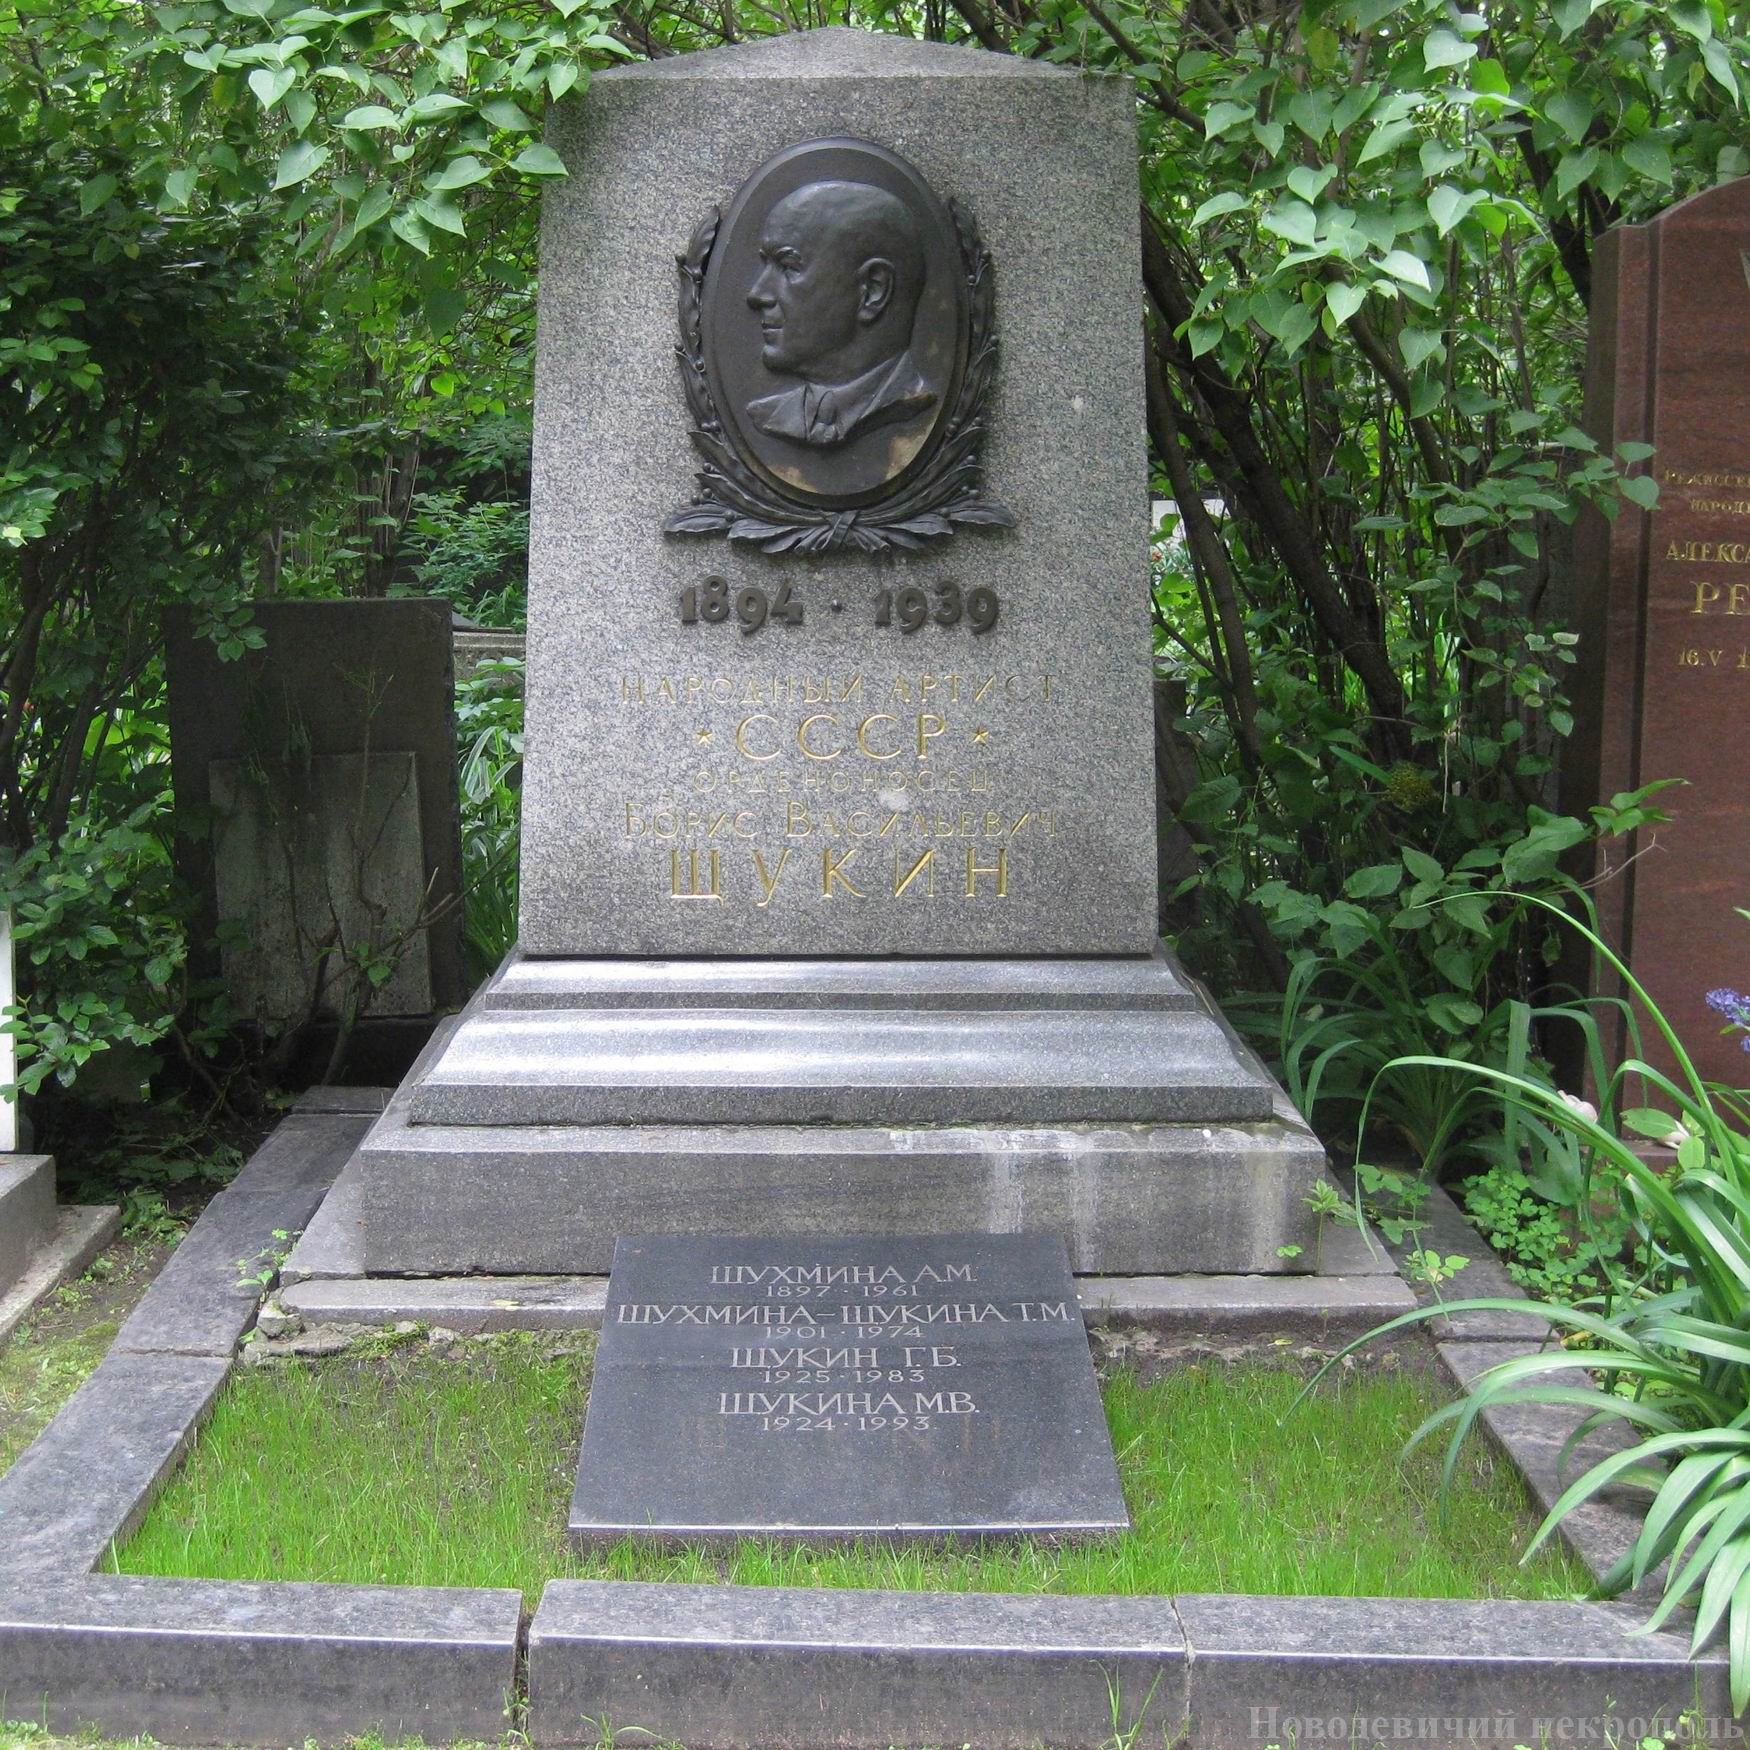 Памятник на могиле Щукина Б.В. (1894-1939), ск.В.Цигаль, арх. Е.Стамо, на Новодевичьем кладбище (2-10-14). Нажмите левую кнопку мыши, чтобы увидеть фрагмент.